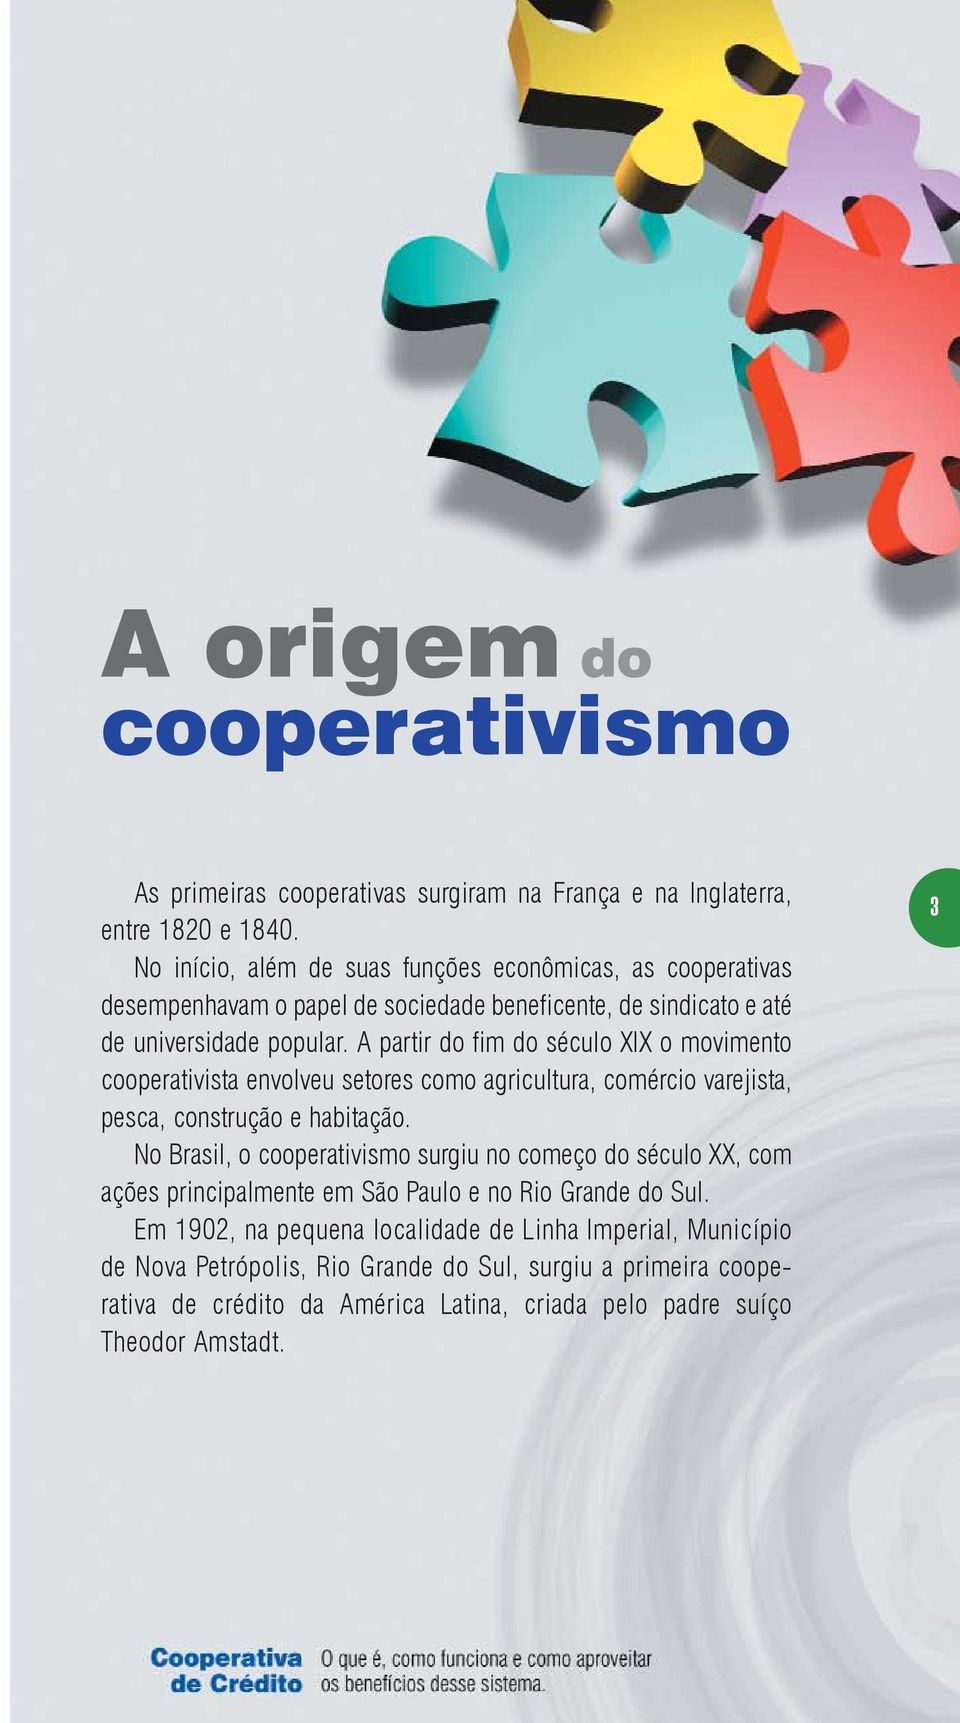 A partir do fim do século XIX o movimento cooperativista envolveu setores como agricultura, comércio varejista, pesca, construção e habitação.